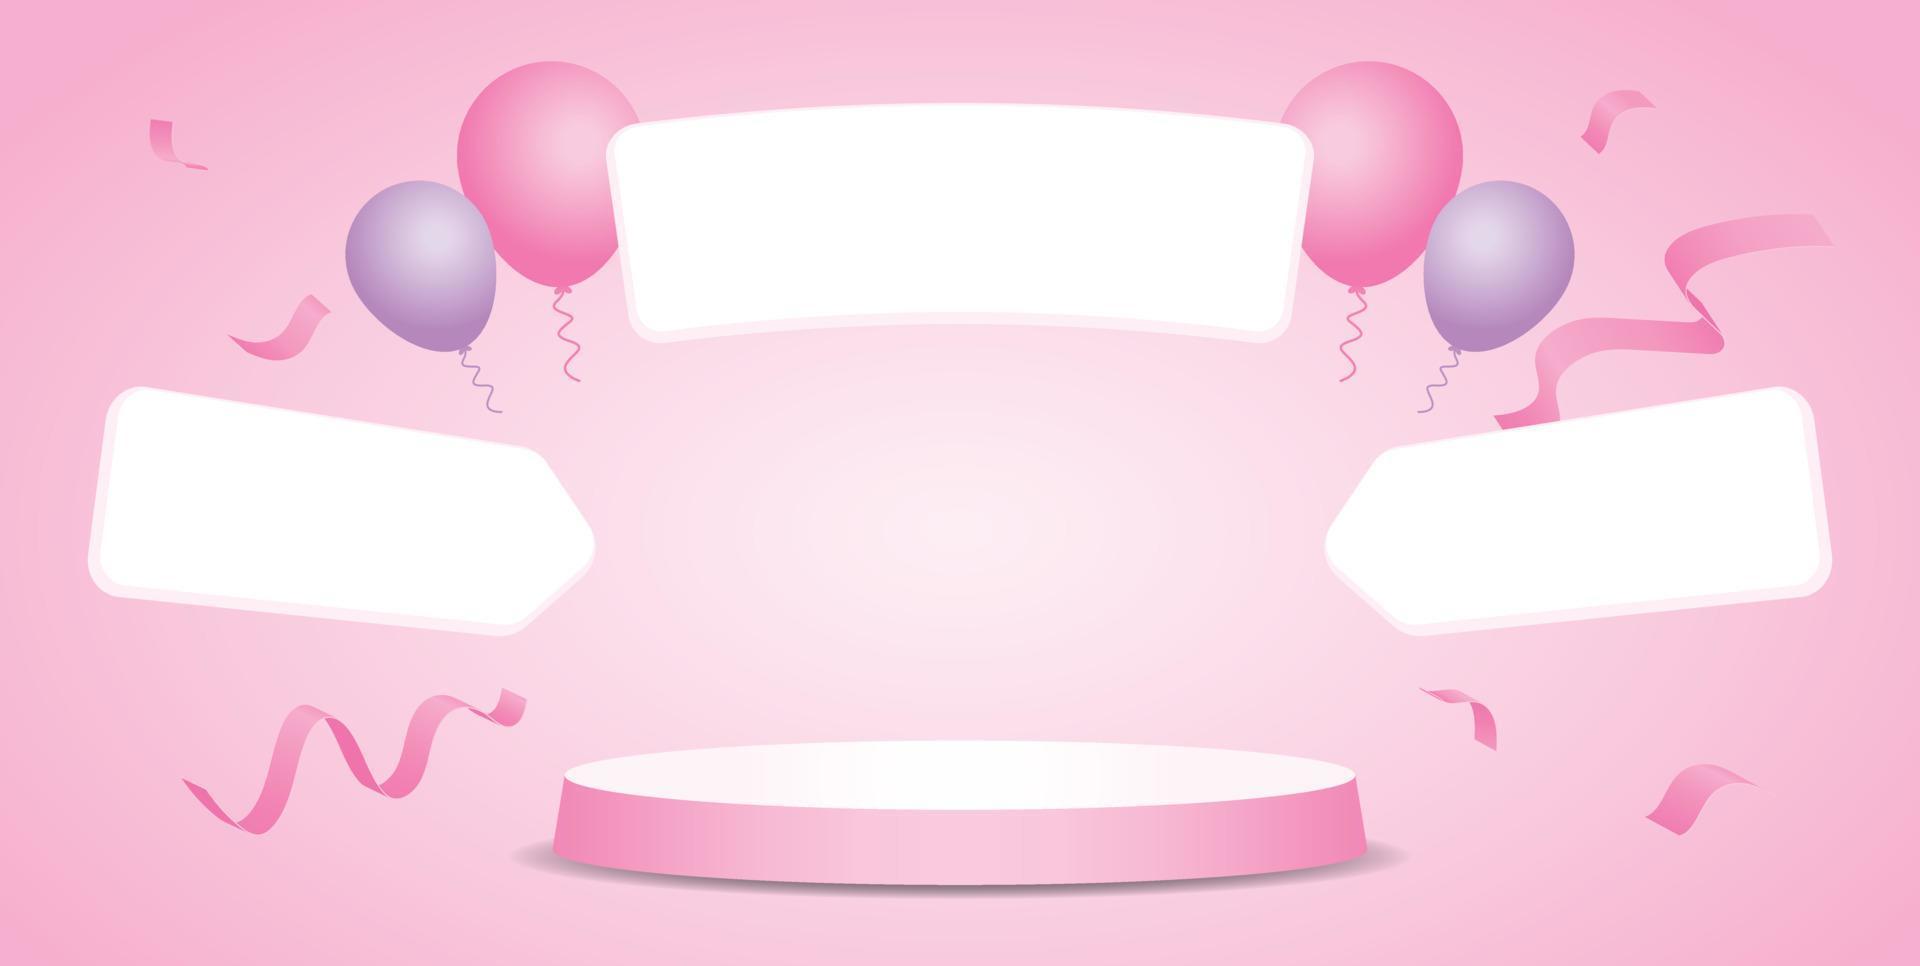 pódio de exibição de produto redondo rosa fofo com balões e confetes e setas vetor de ilustração 3d em fundo rosa pastel doce para colocar objeto